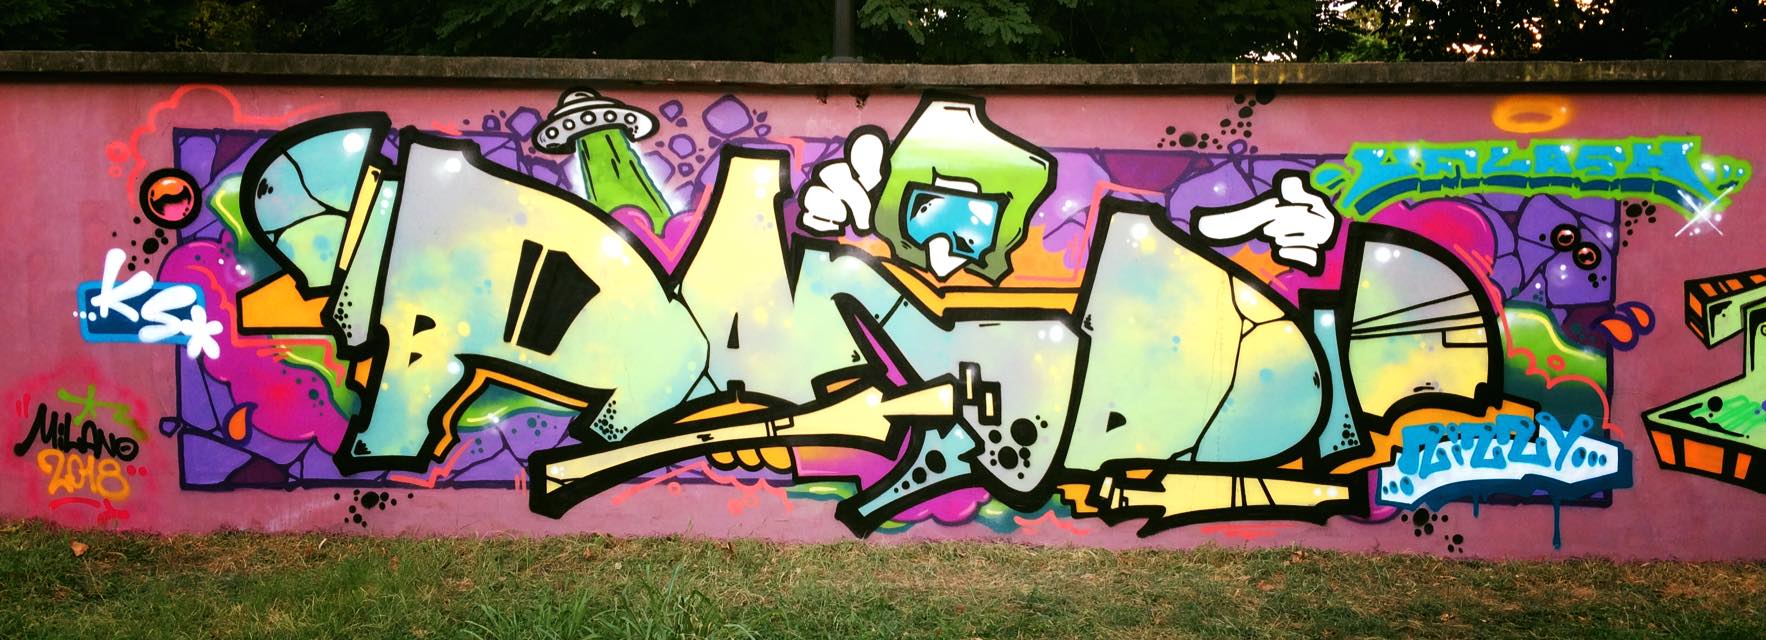 BAND - SPRAYCITY.AT Graffiti Blog